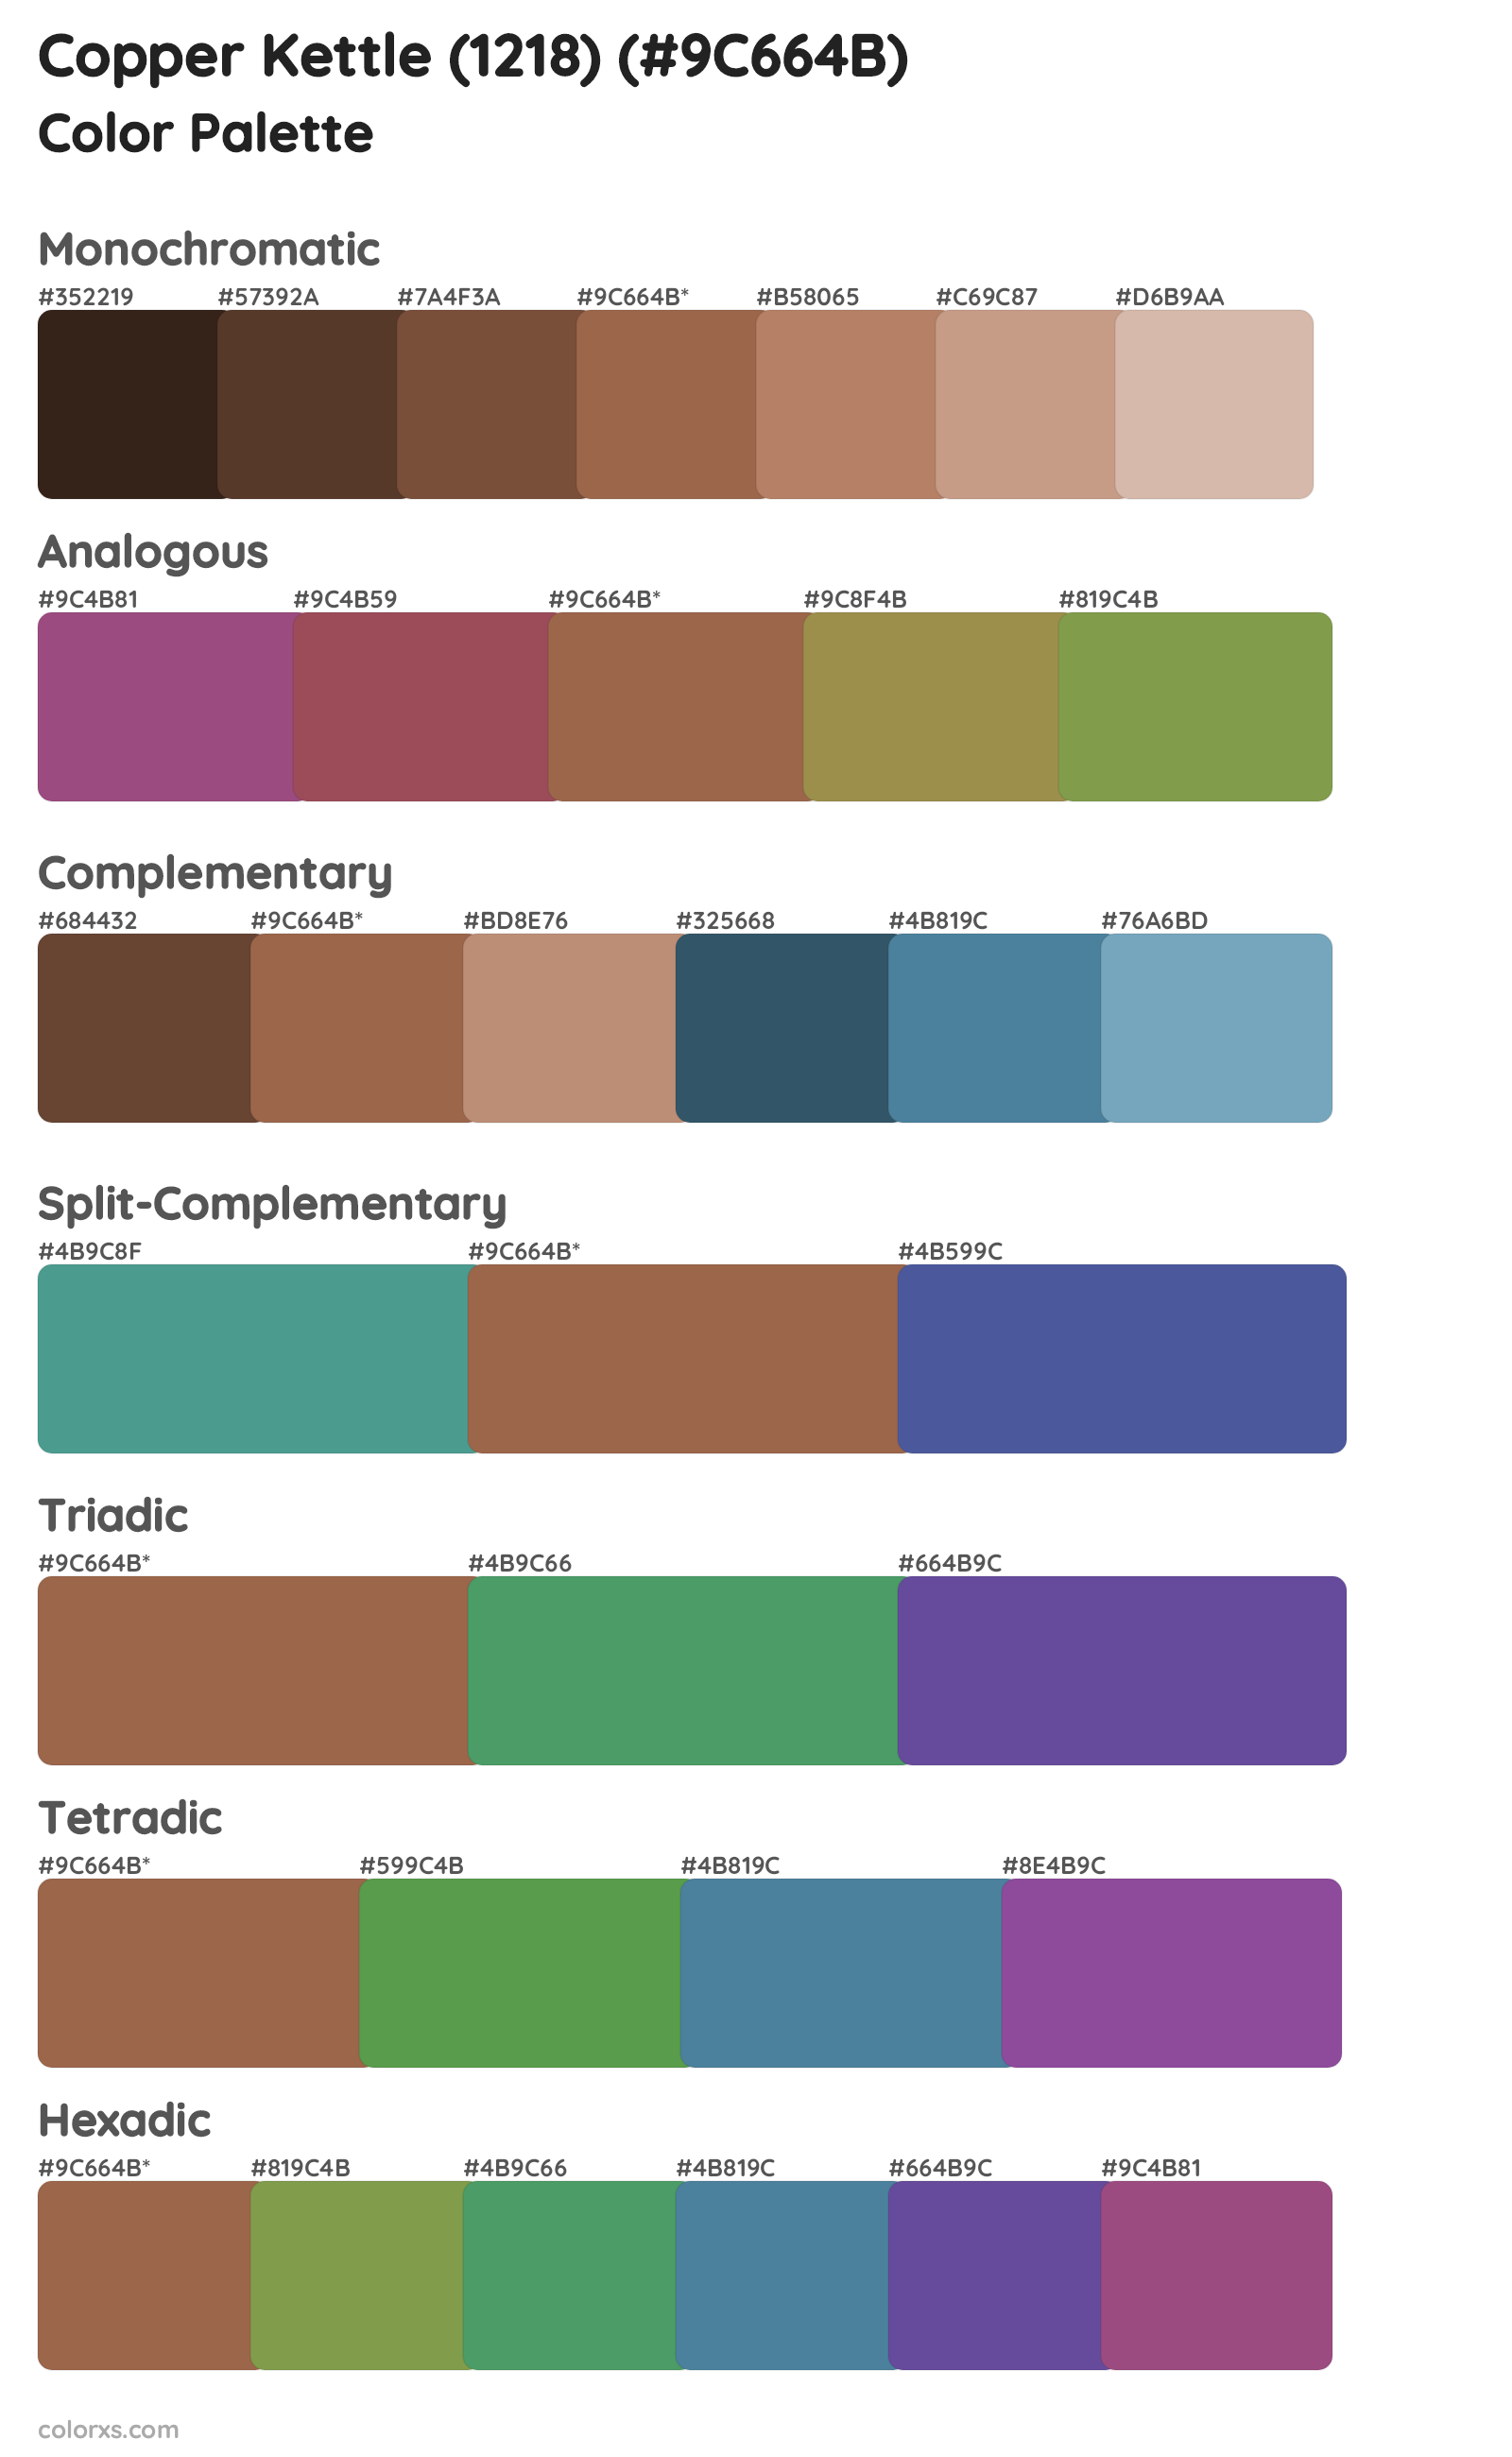 Copper Kettle (1218) Color Scheme Palettes